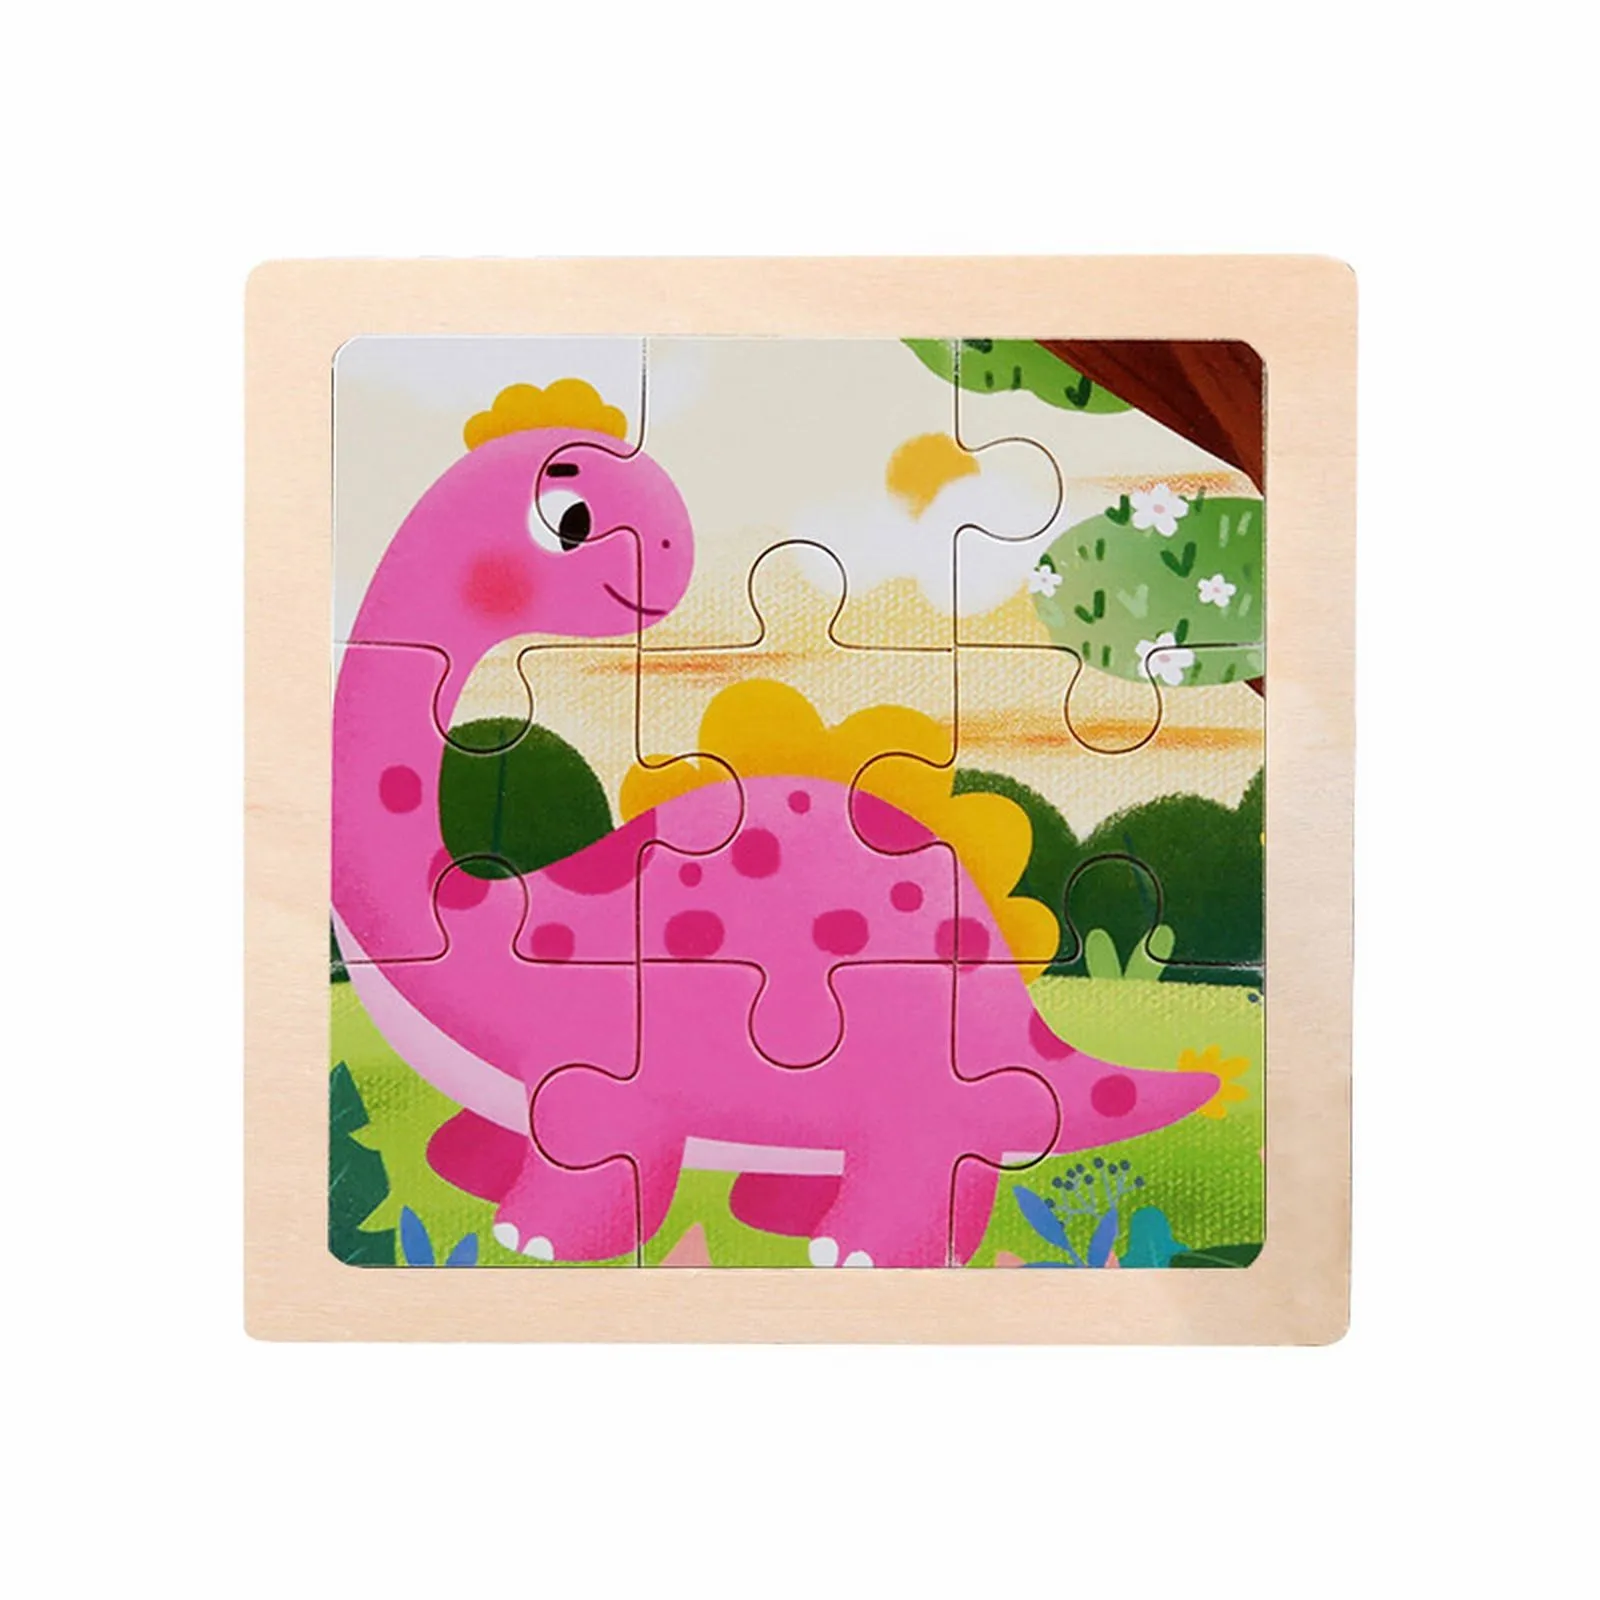 

Игрушка Jumpy, деревянная головоломка из 9-х частей, Мультяшные животные, автомобиль, деревянная головоломка, детская развивающая головоломка для раннего развития, проще